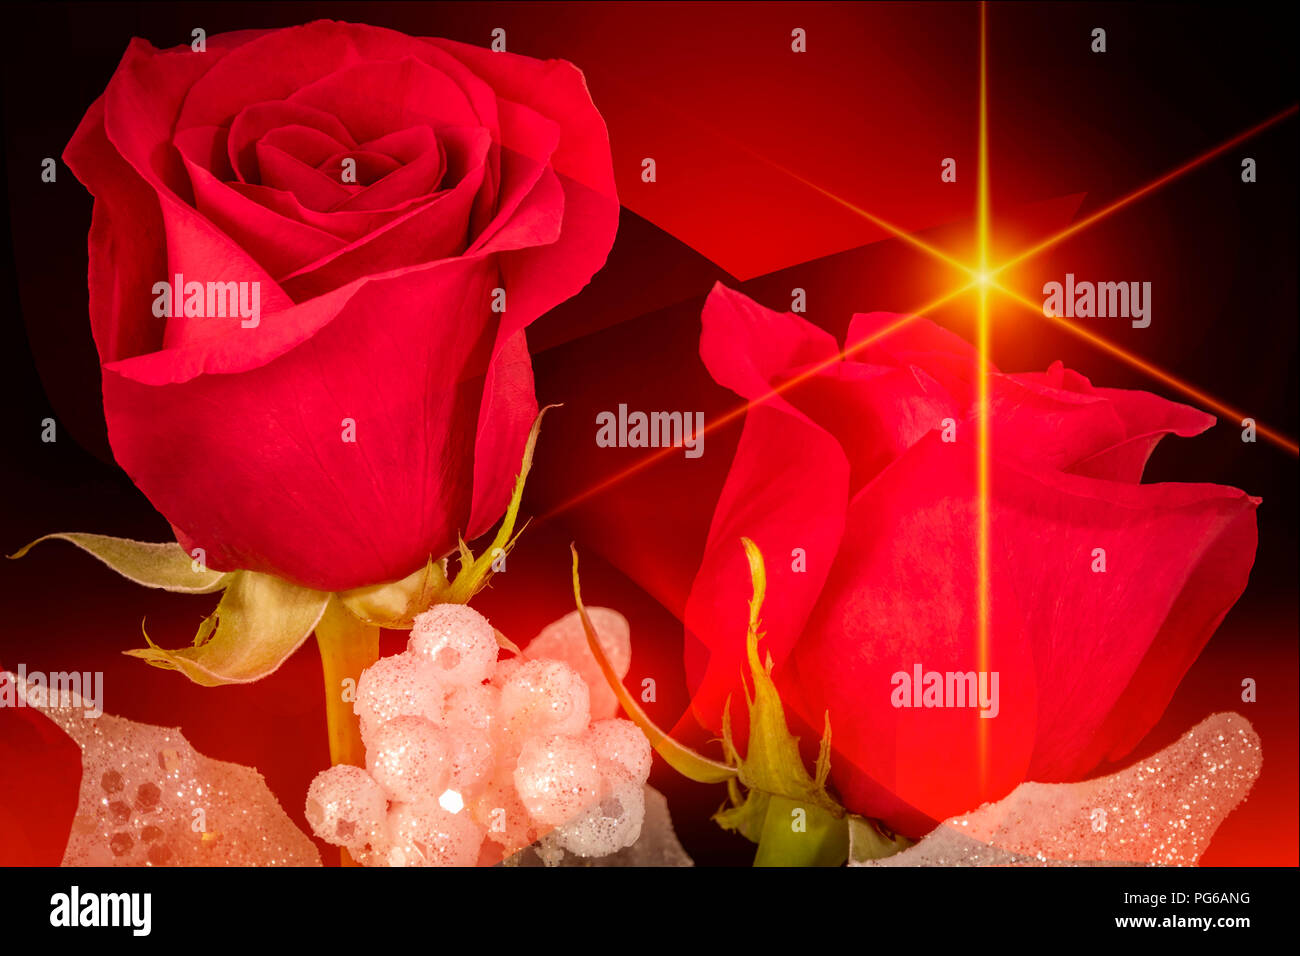 Zwei rote Rosen mit Glitzer Dekoration mit einem roten und schwarzen Hintergrund & gelber Stern Stockfoto